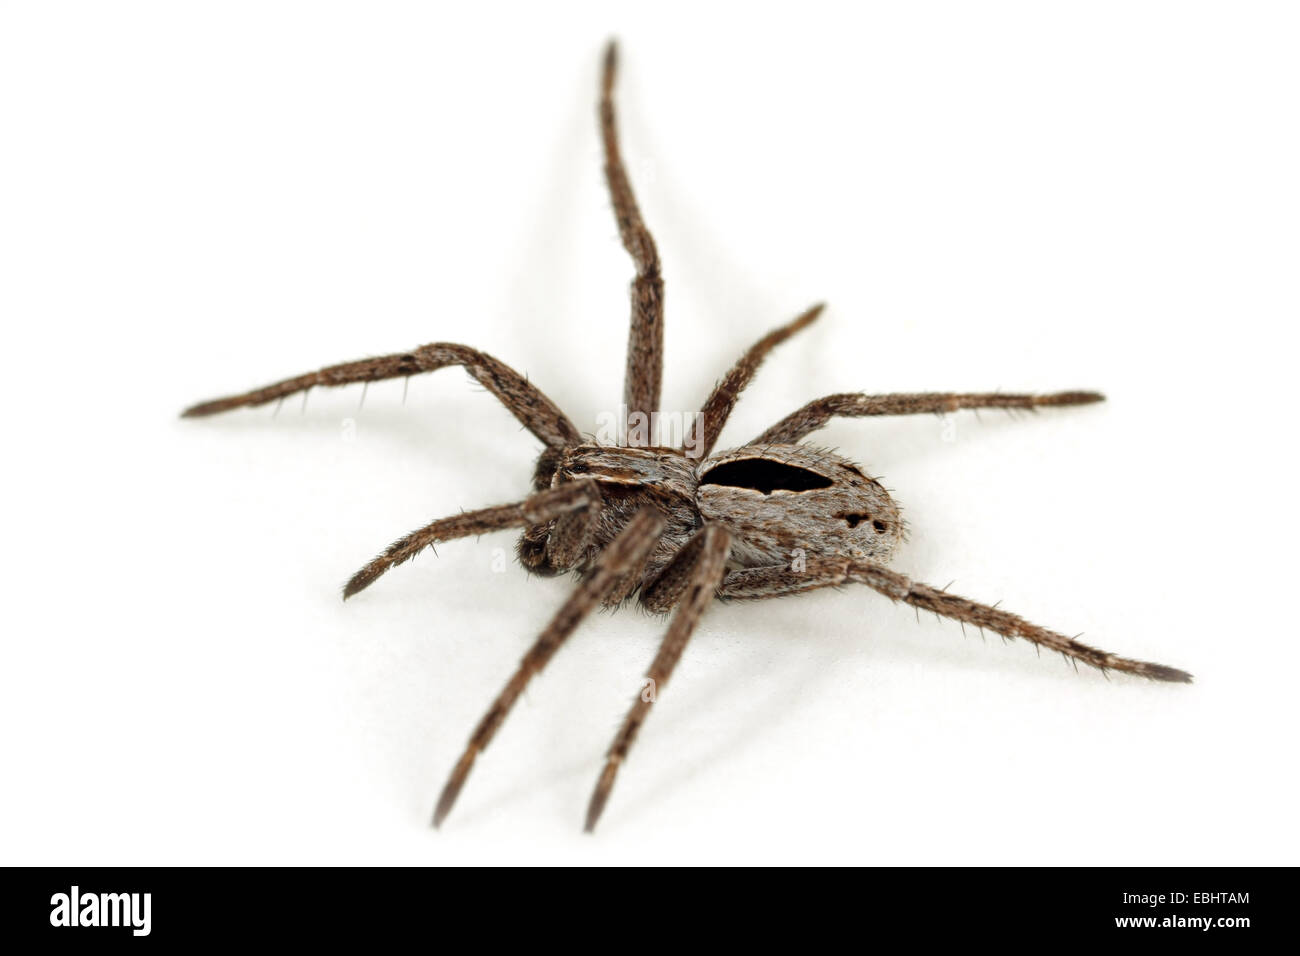 Un bambino maschio (Thanatus formicinus) ragno su sfondo bianco. Questo ragno è parte integrante della famiglia Philodromidae, esecuzione di ragni granchio. Foto Stock